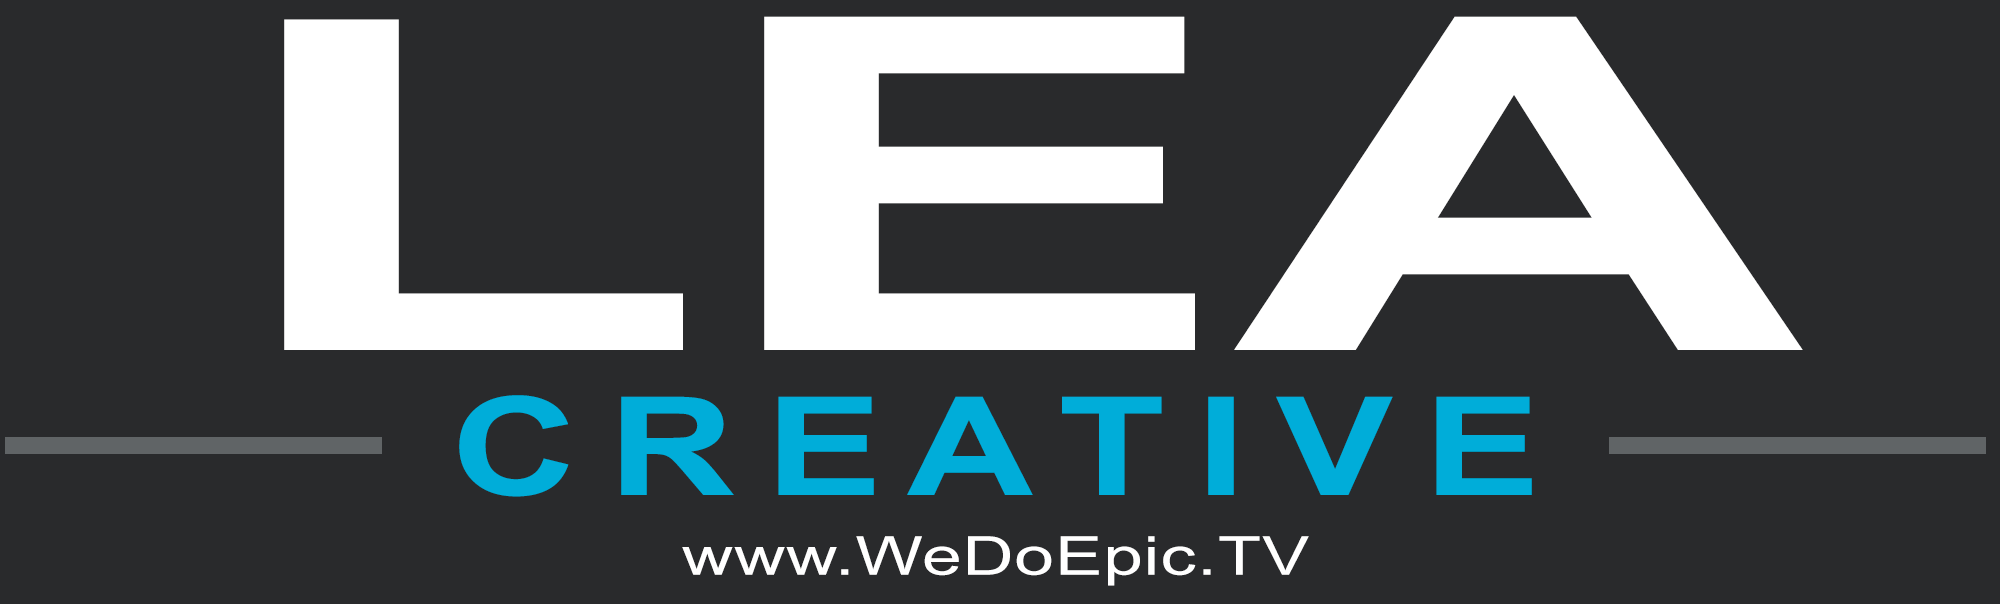 Lea Creative